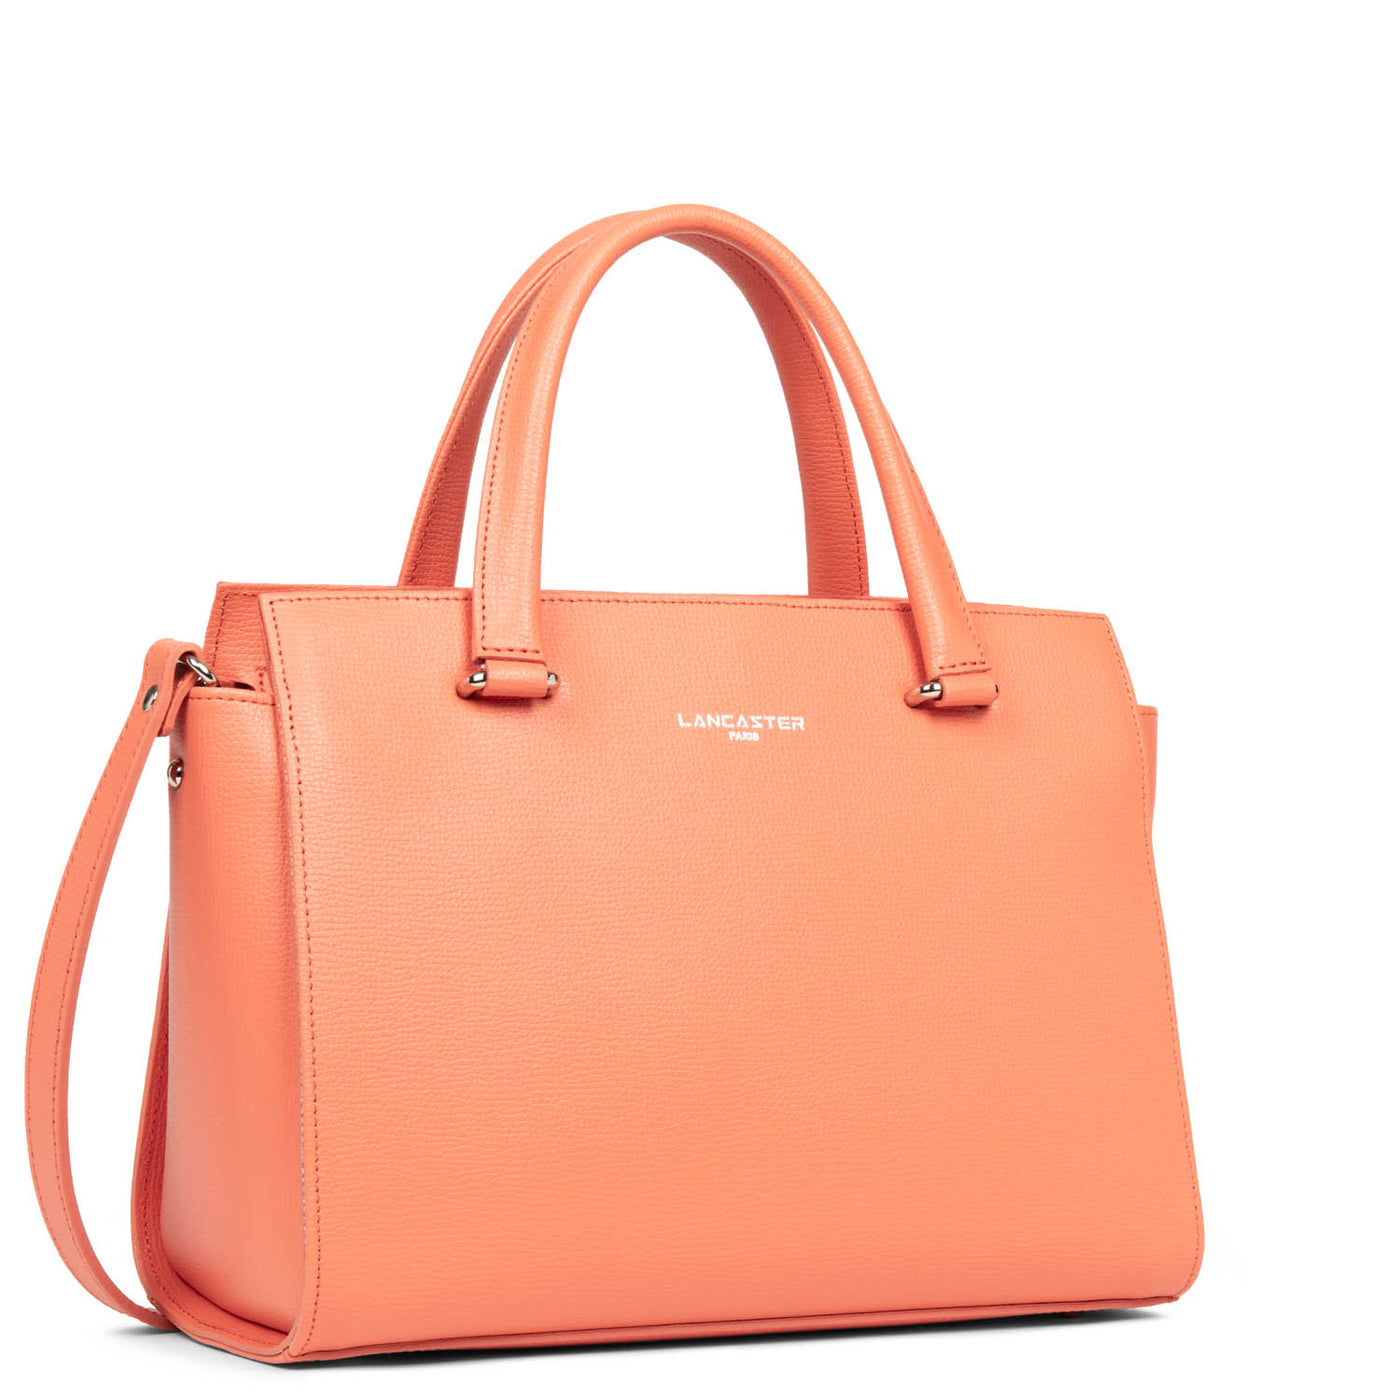 m handbag - sierra #couleur_blush